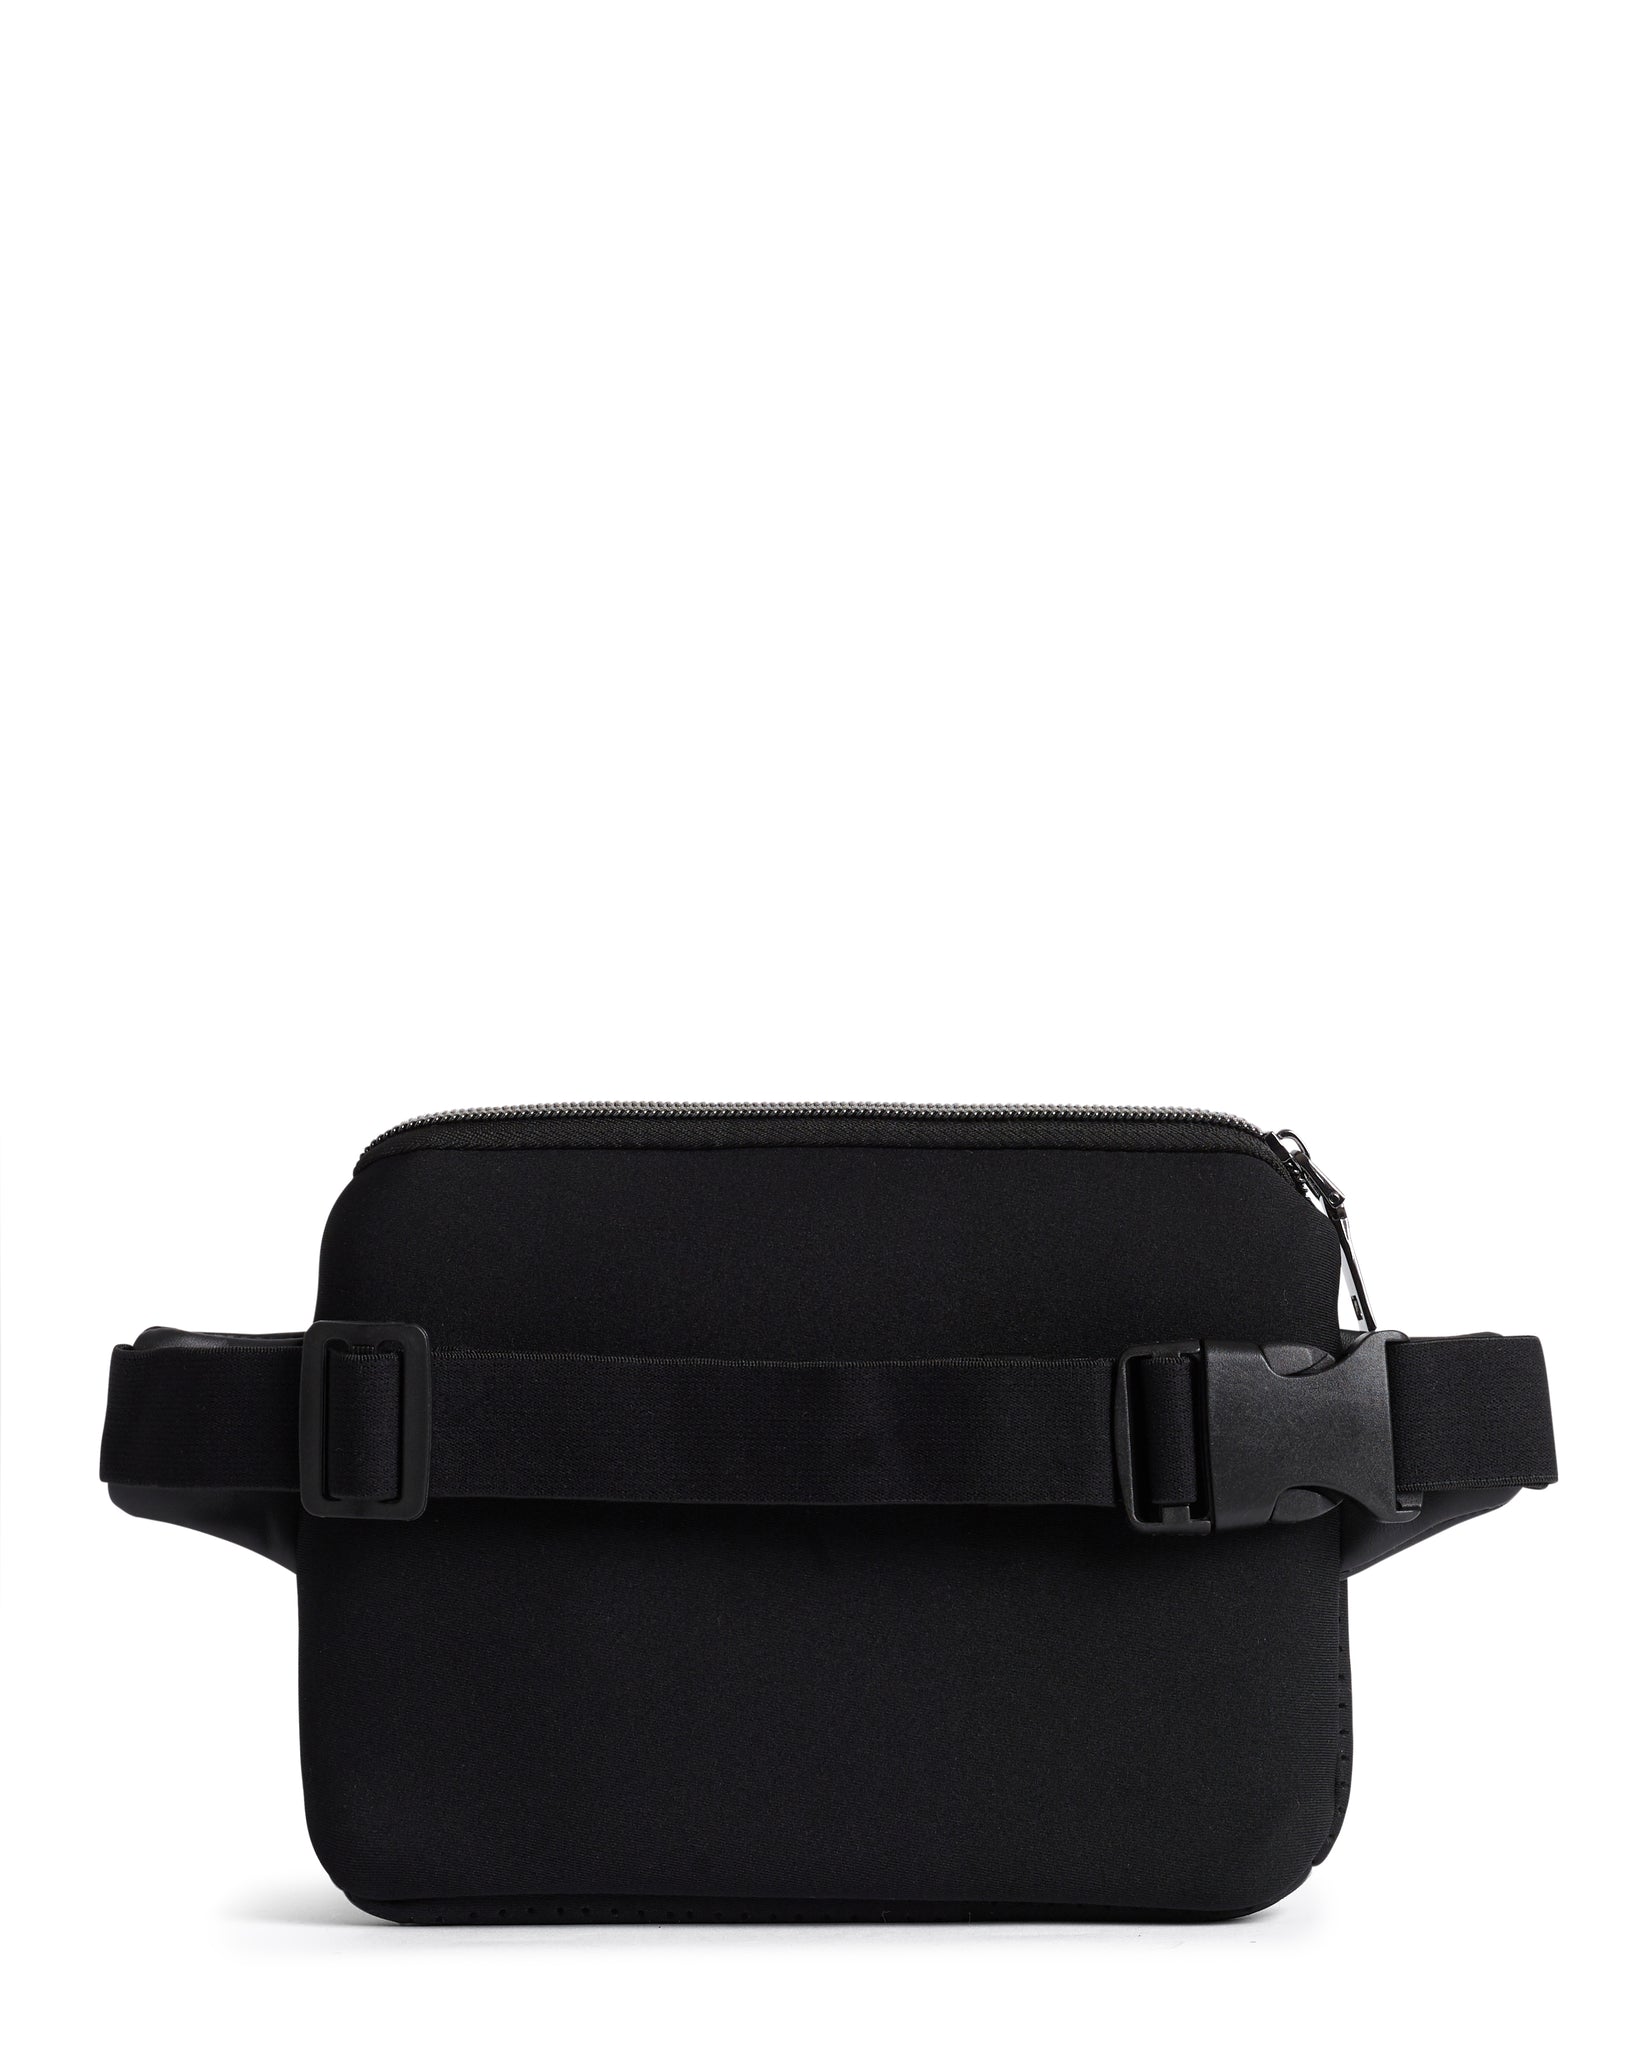 The Bum / Waist / Chest Bag (BLACK) Neoprene Bag